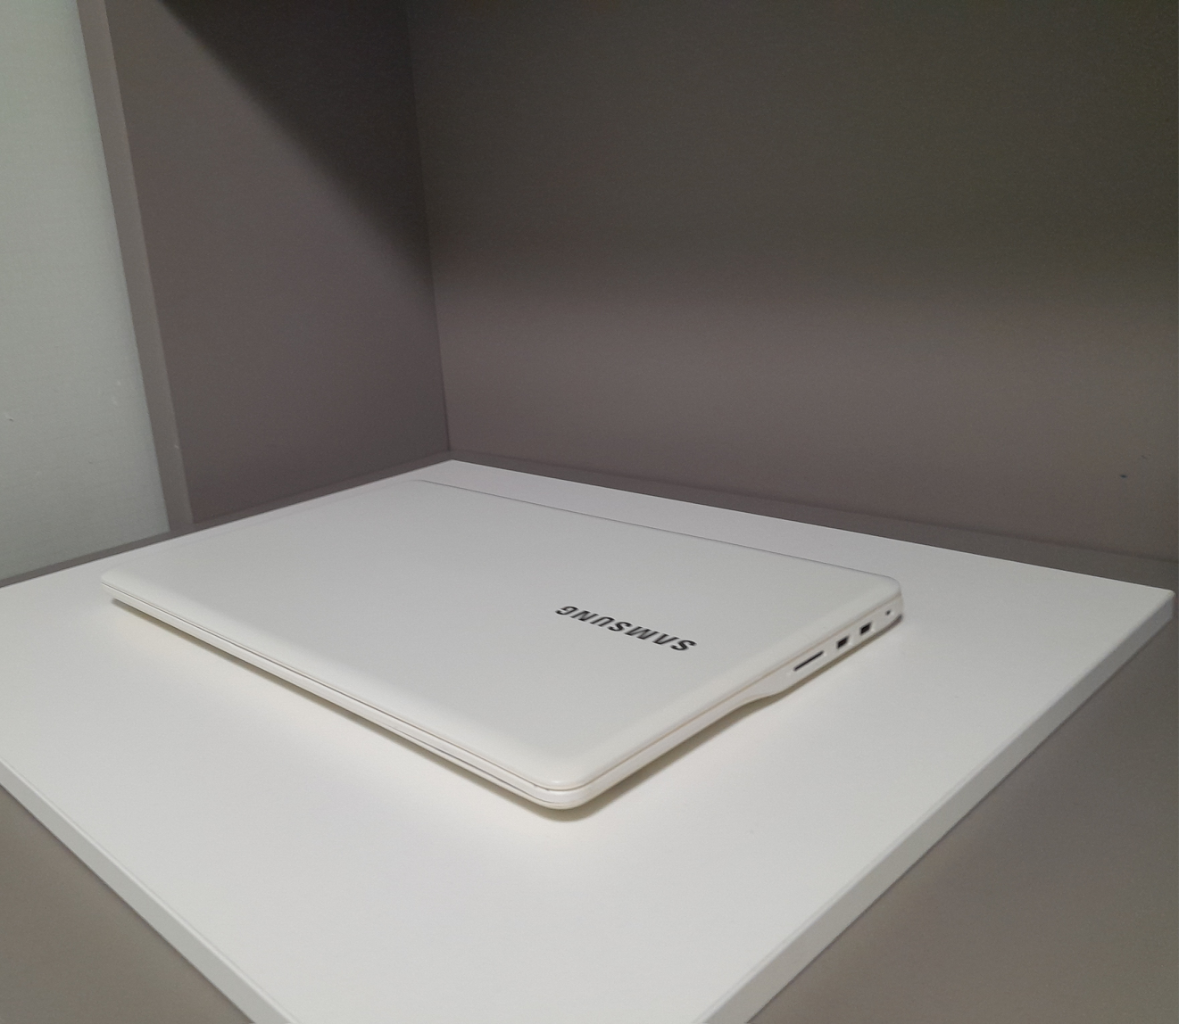 삼성 노트북 판매합니다 (NT500R5M, 성능 설명)